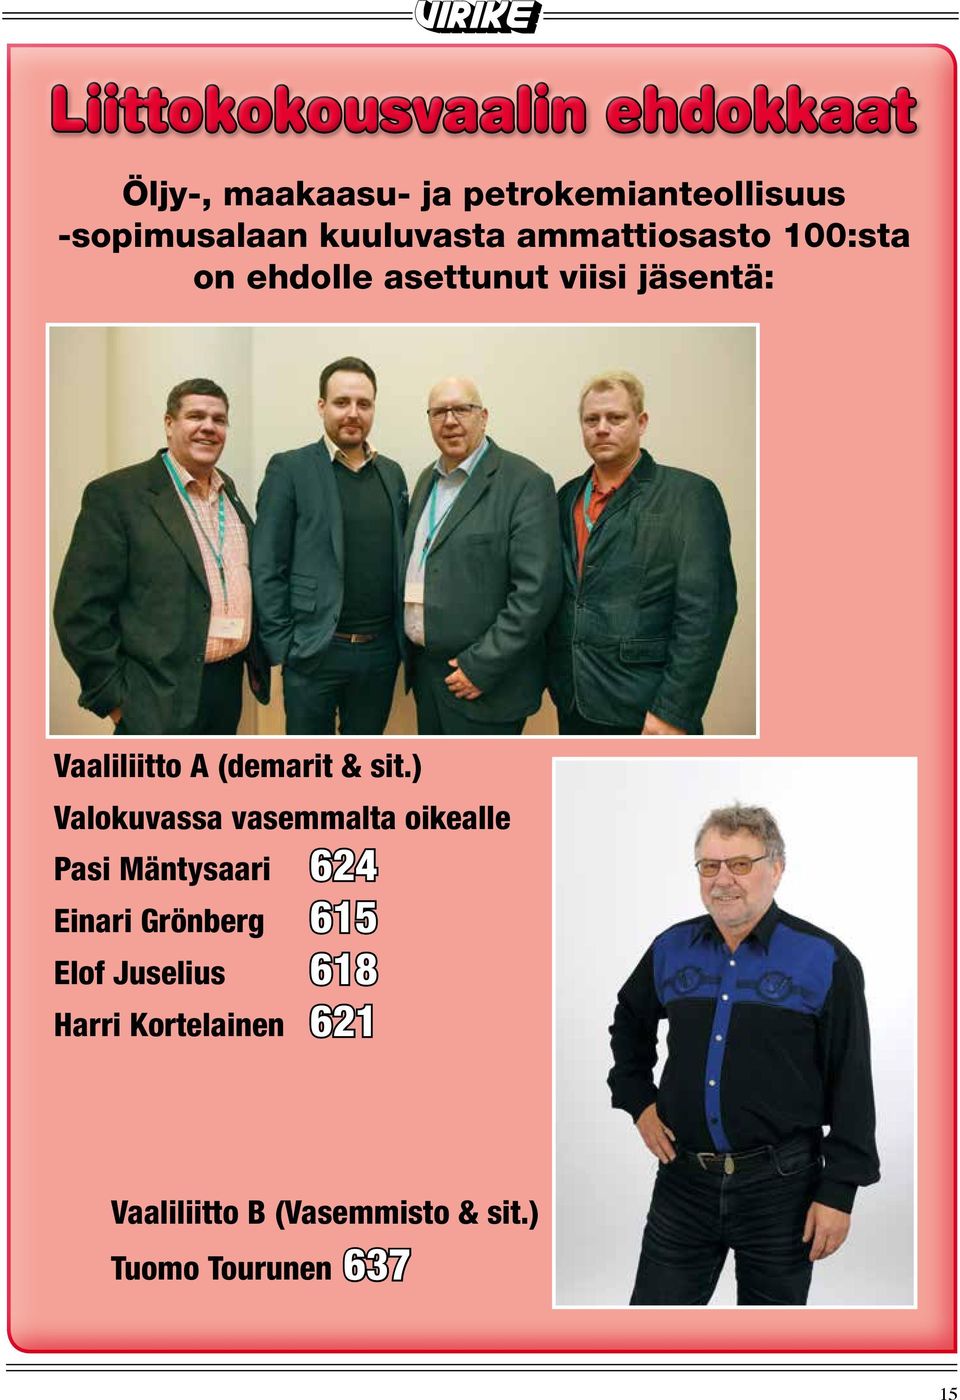 helmikuuta Öljy-, maakaasu- petrokemianteollisuus -sopimusalaan kuuluvasta ammattiosasto 100:sta on ehdolle asettunut viisi jäsentä: Vaaliliitto A (demarit & sit.